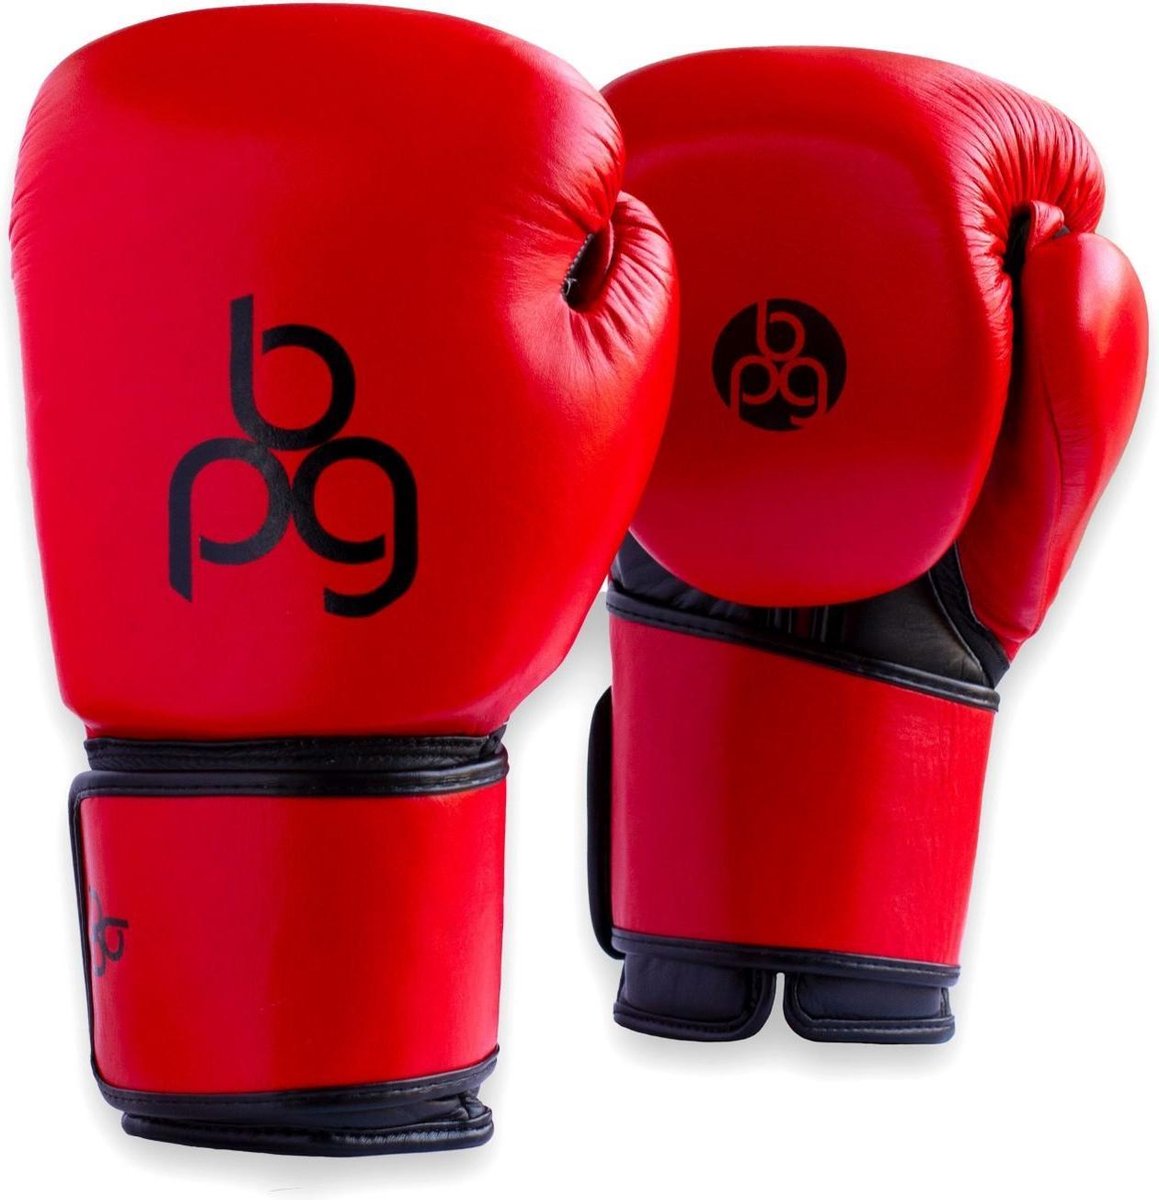 BPG-boxing pad gloves - Personal trainer - Bokshandschoenen met geïntrigeerde stoot pad - 14oz - Zwart - Rood - Roze - Grijs - hand pad